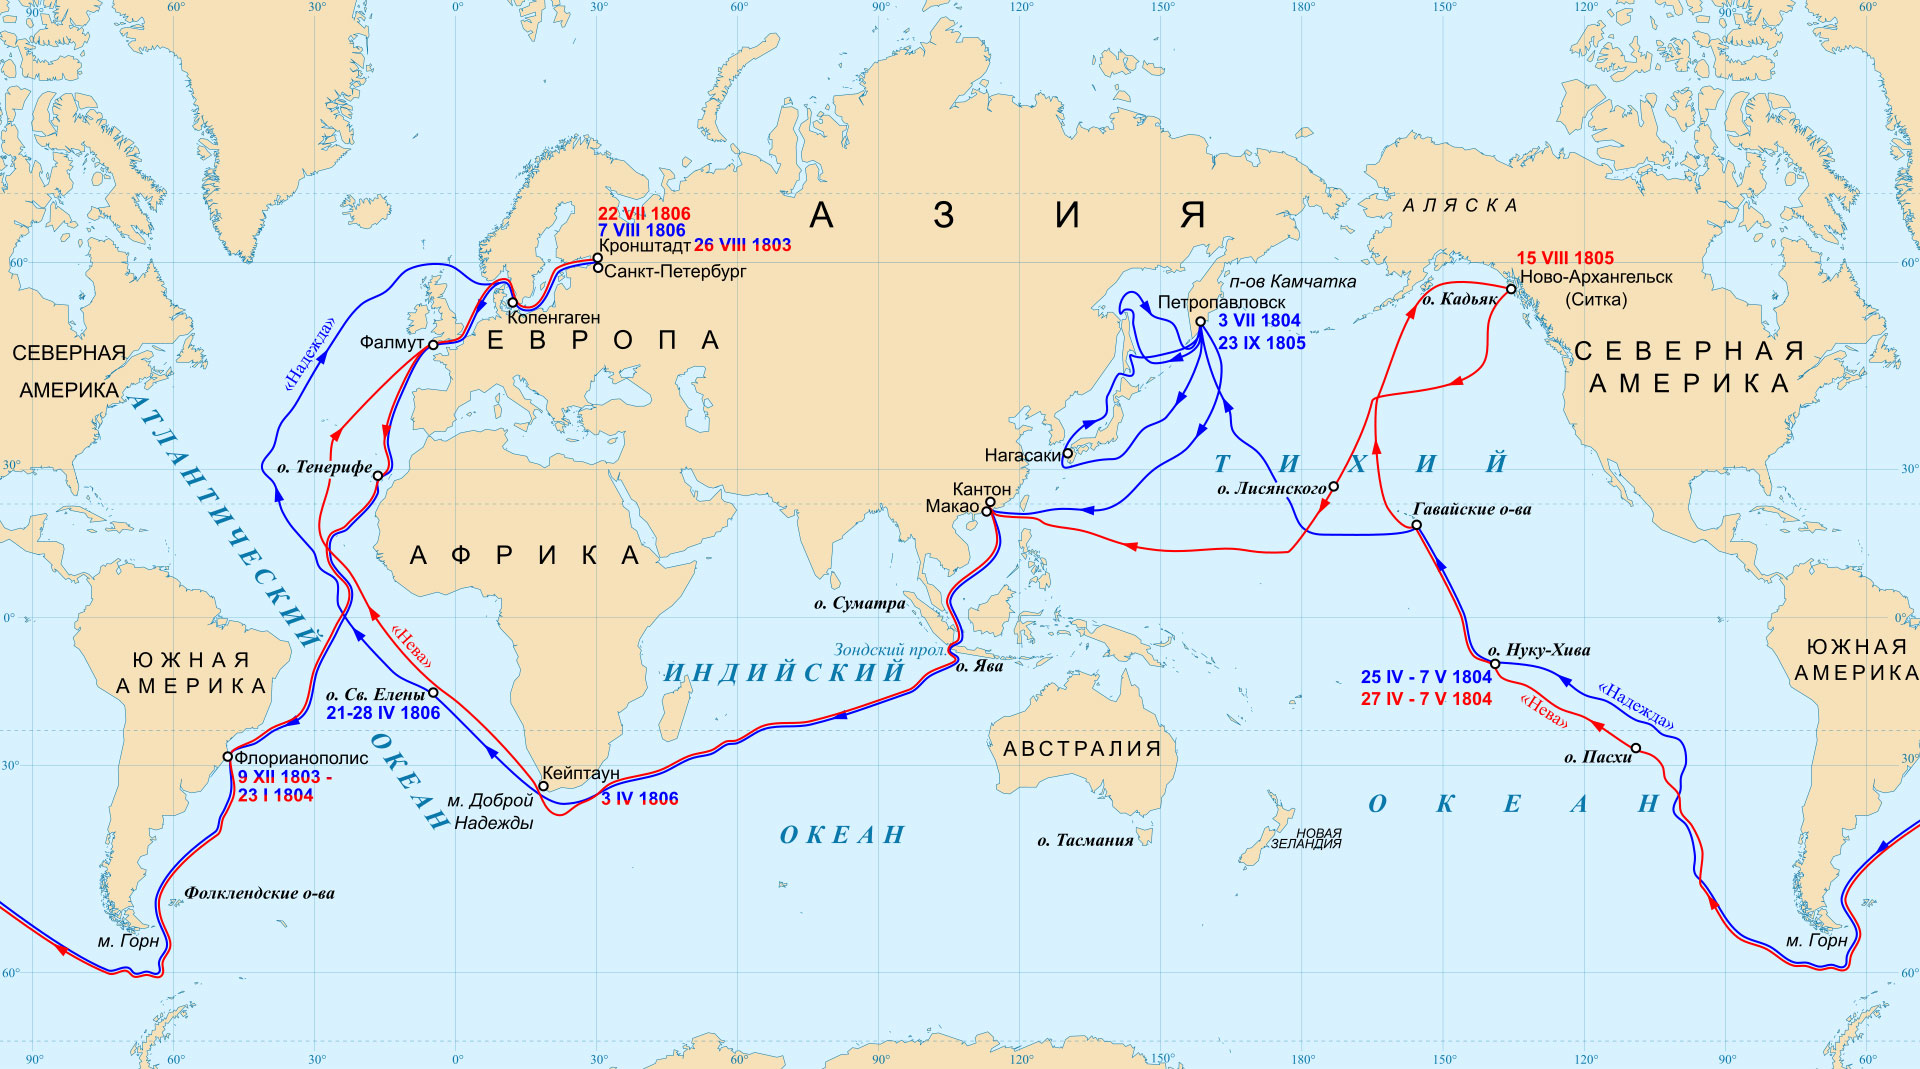 Le trajet des deux navires de la première circumnavigation russe. Celui de la Neva est en rouge et celui de la Nadezhda en bleu.